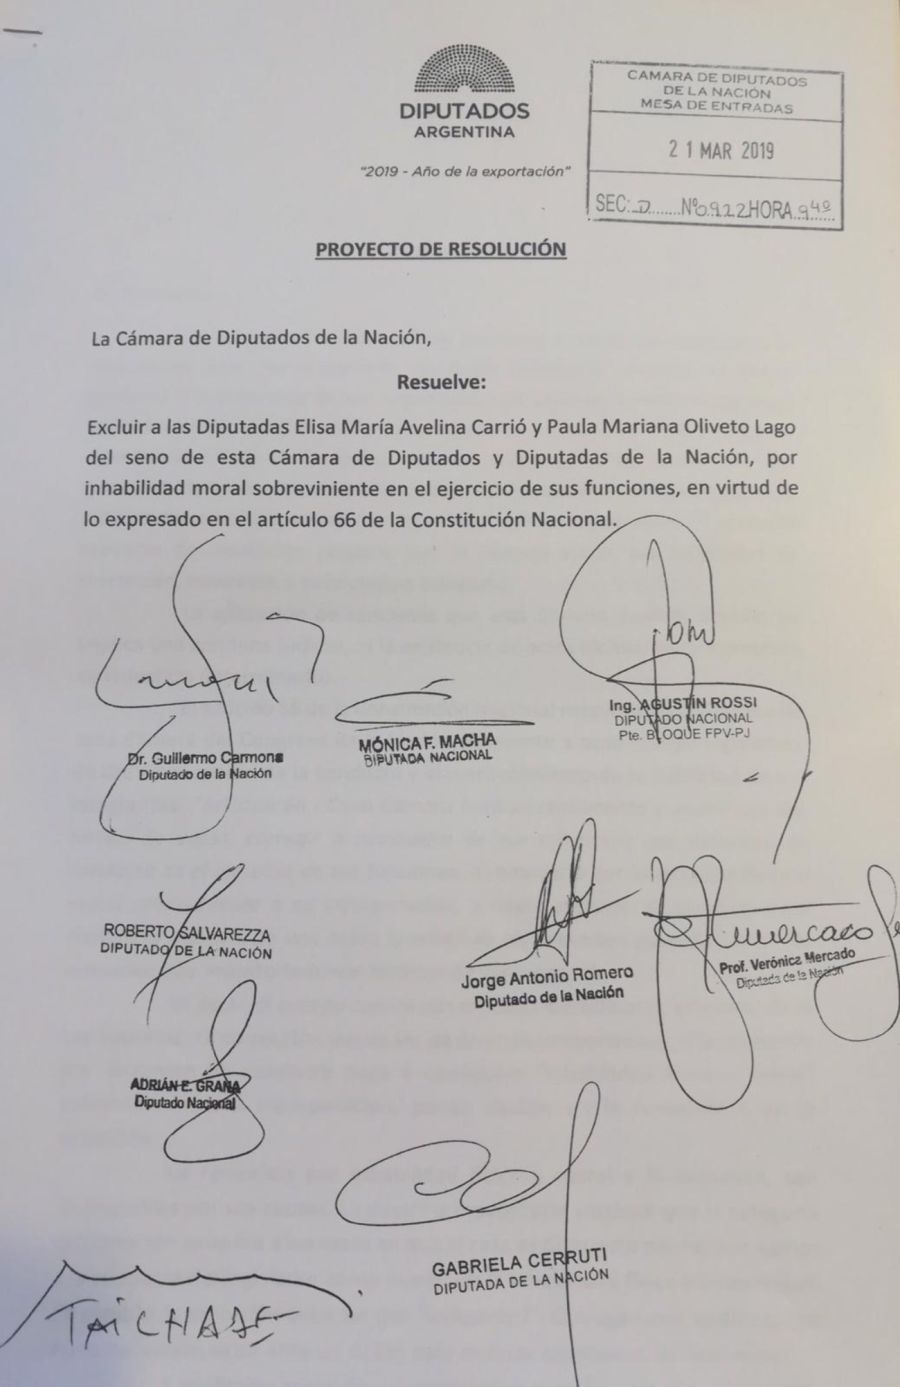 Pedido de resolución del FpV para excluir a Carrió y Oliveto de la Cámara de Diputados.